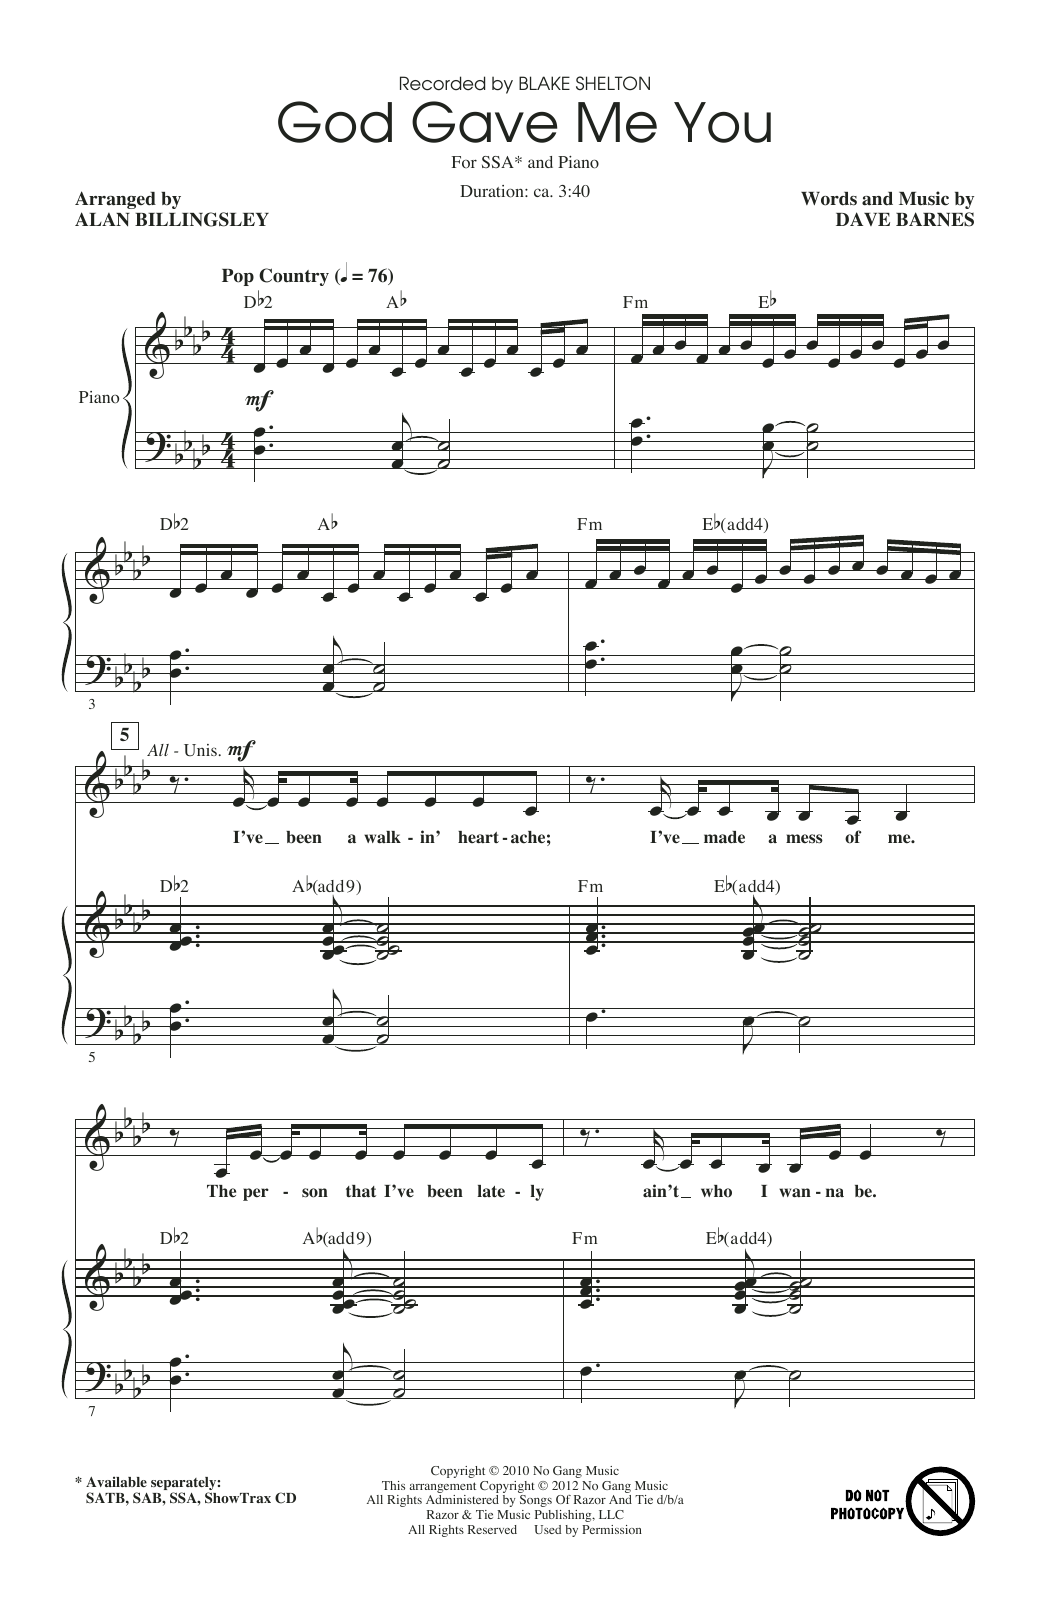 Blake Shelton God Gave Me You (arr. Alan Billingsley) Sheet Music Notes & Chords for SSA Choir - Download or Print PDF